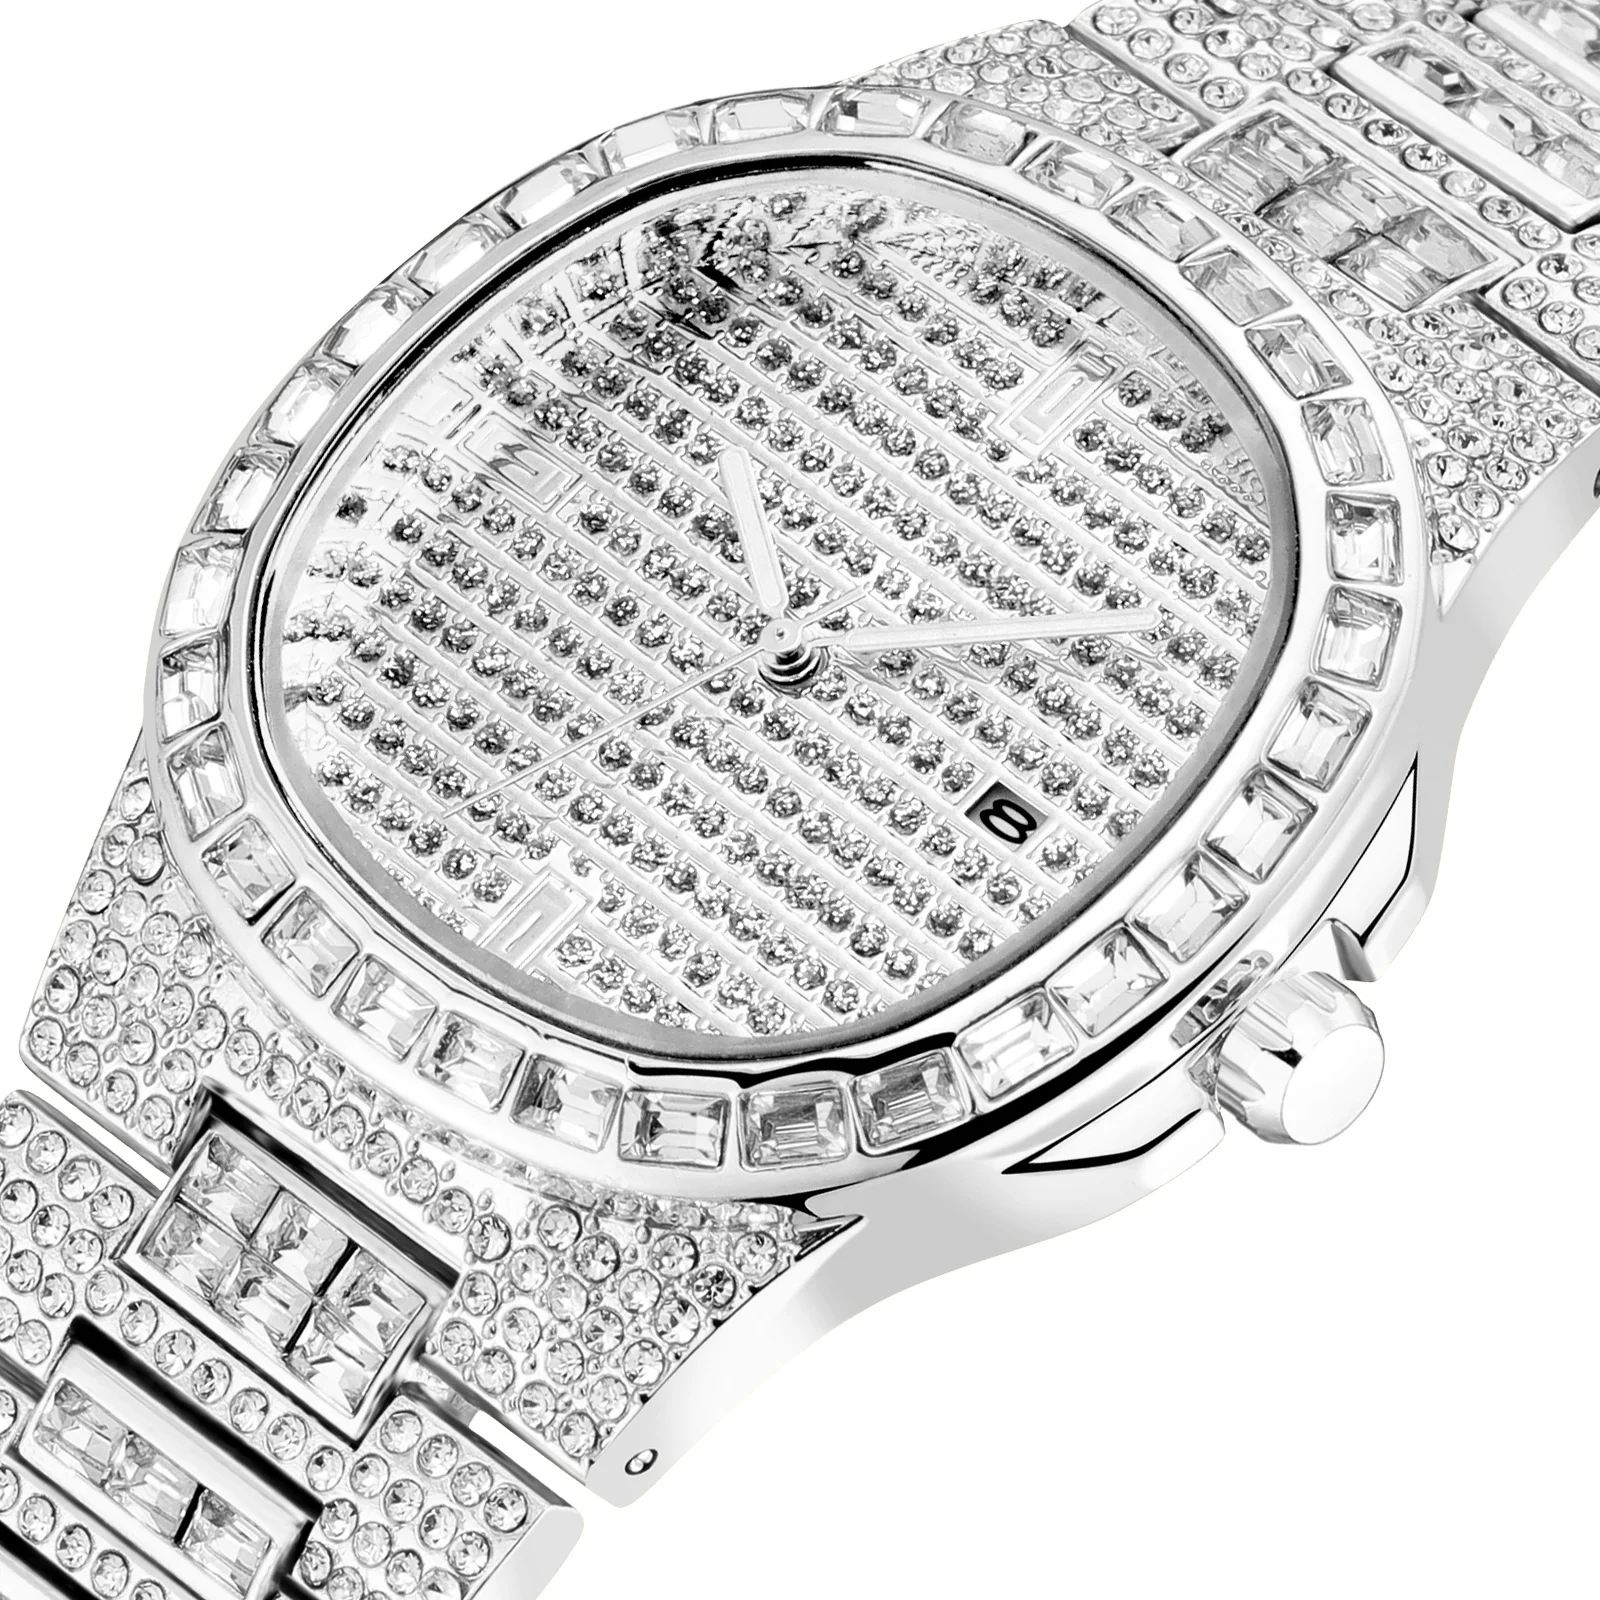 Прямая поставка, в наличии, низкая цена, оптовая продажа, роскошные мужские наручные часы с бриллиантами